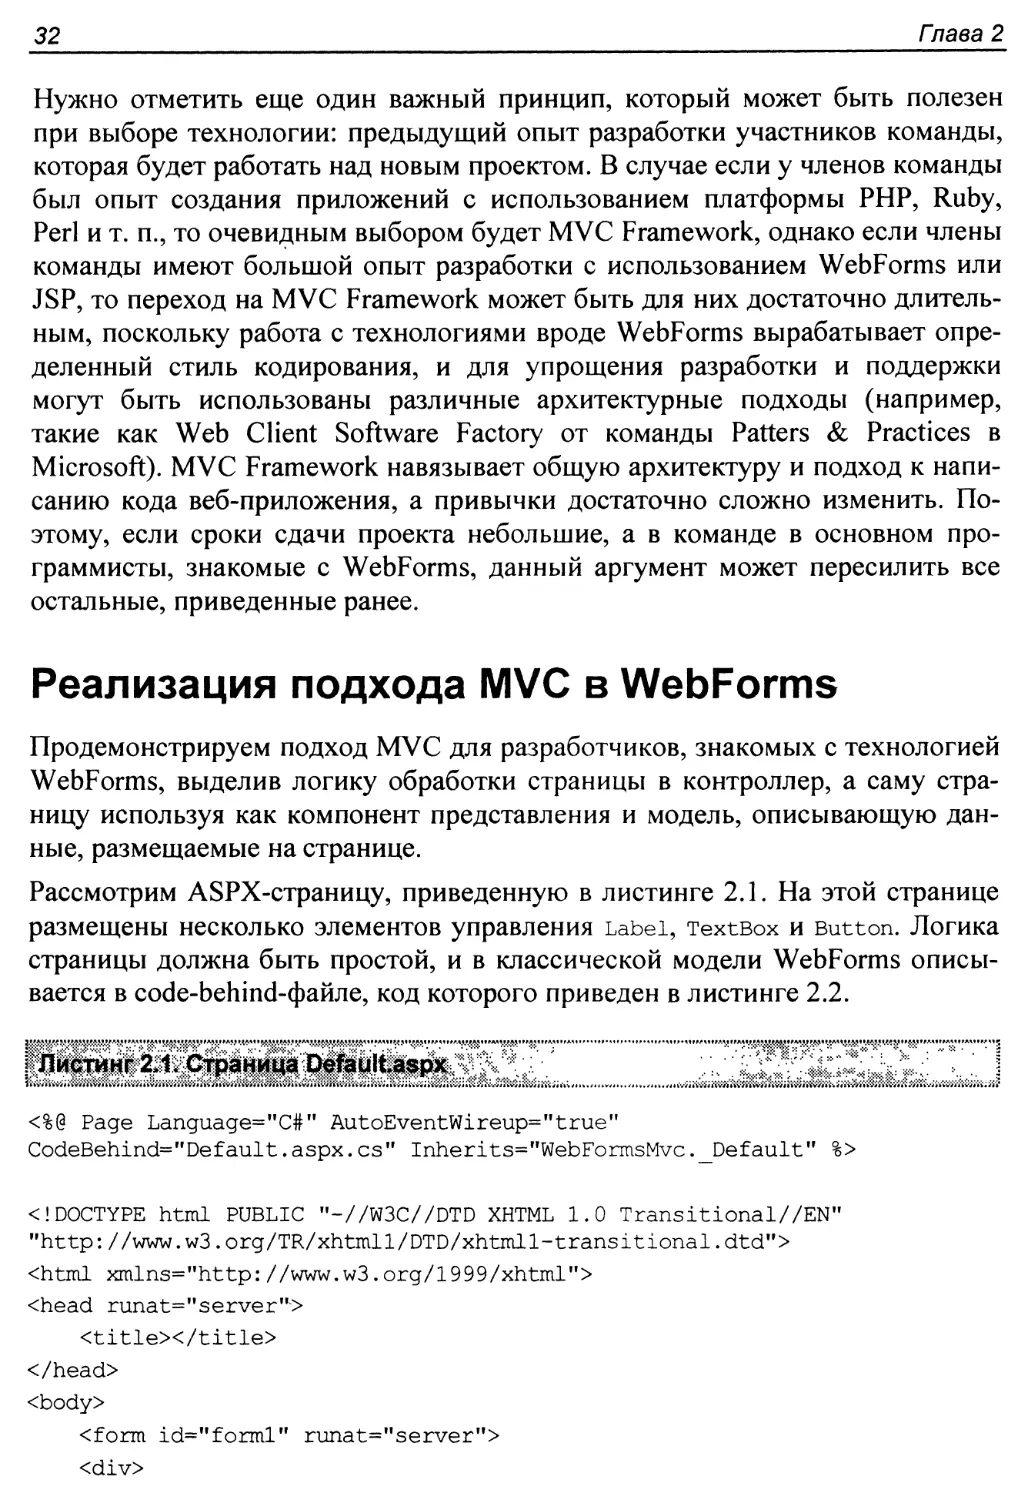 Реализация подхода MVC в WebForms